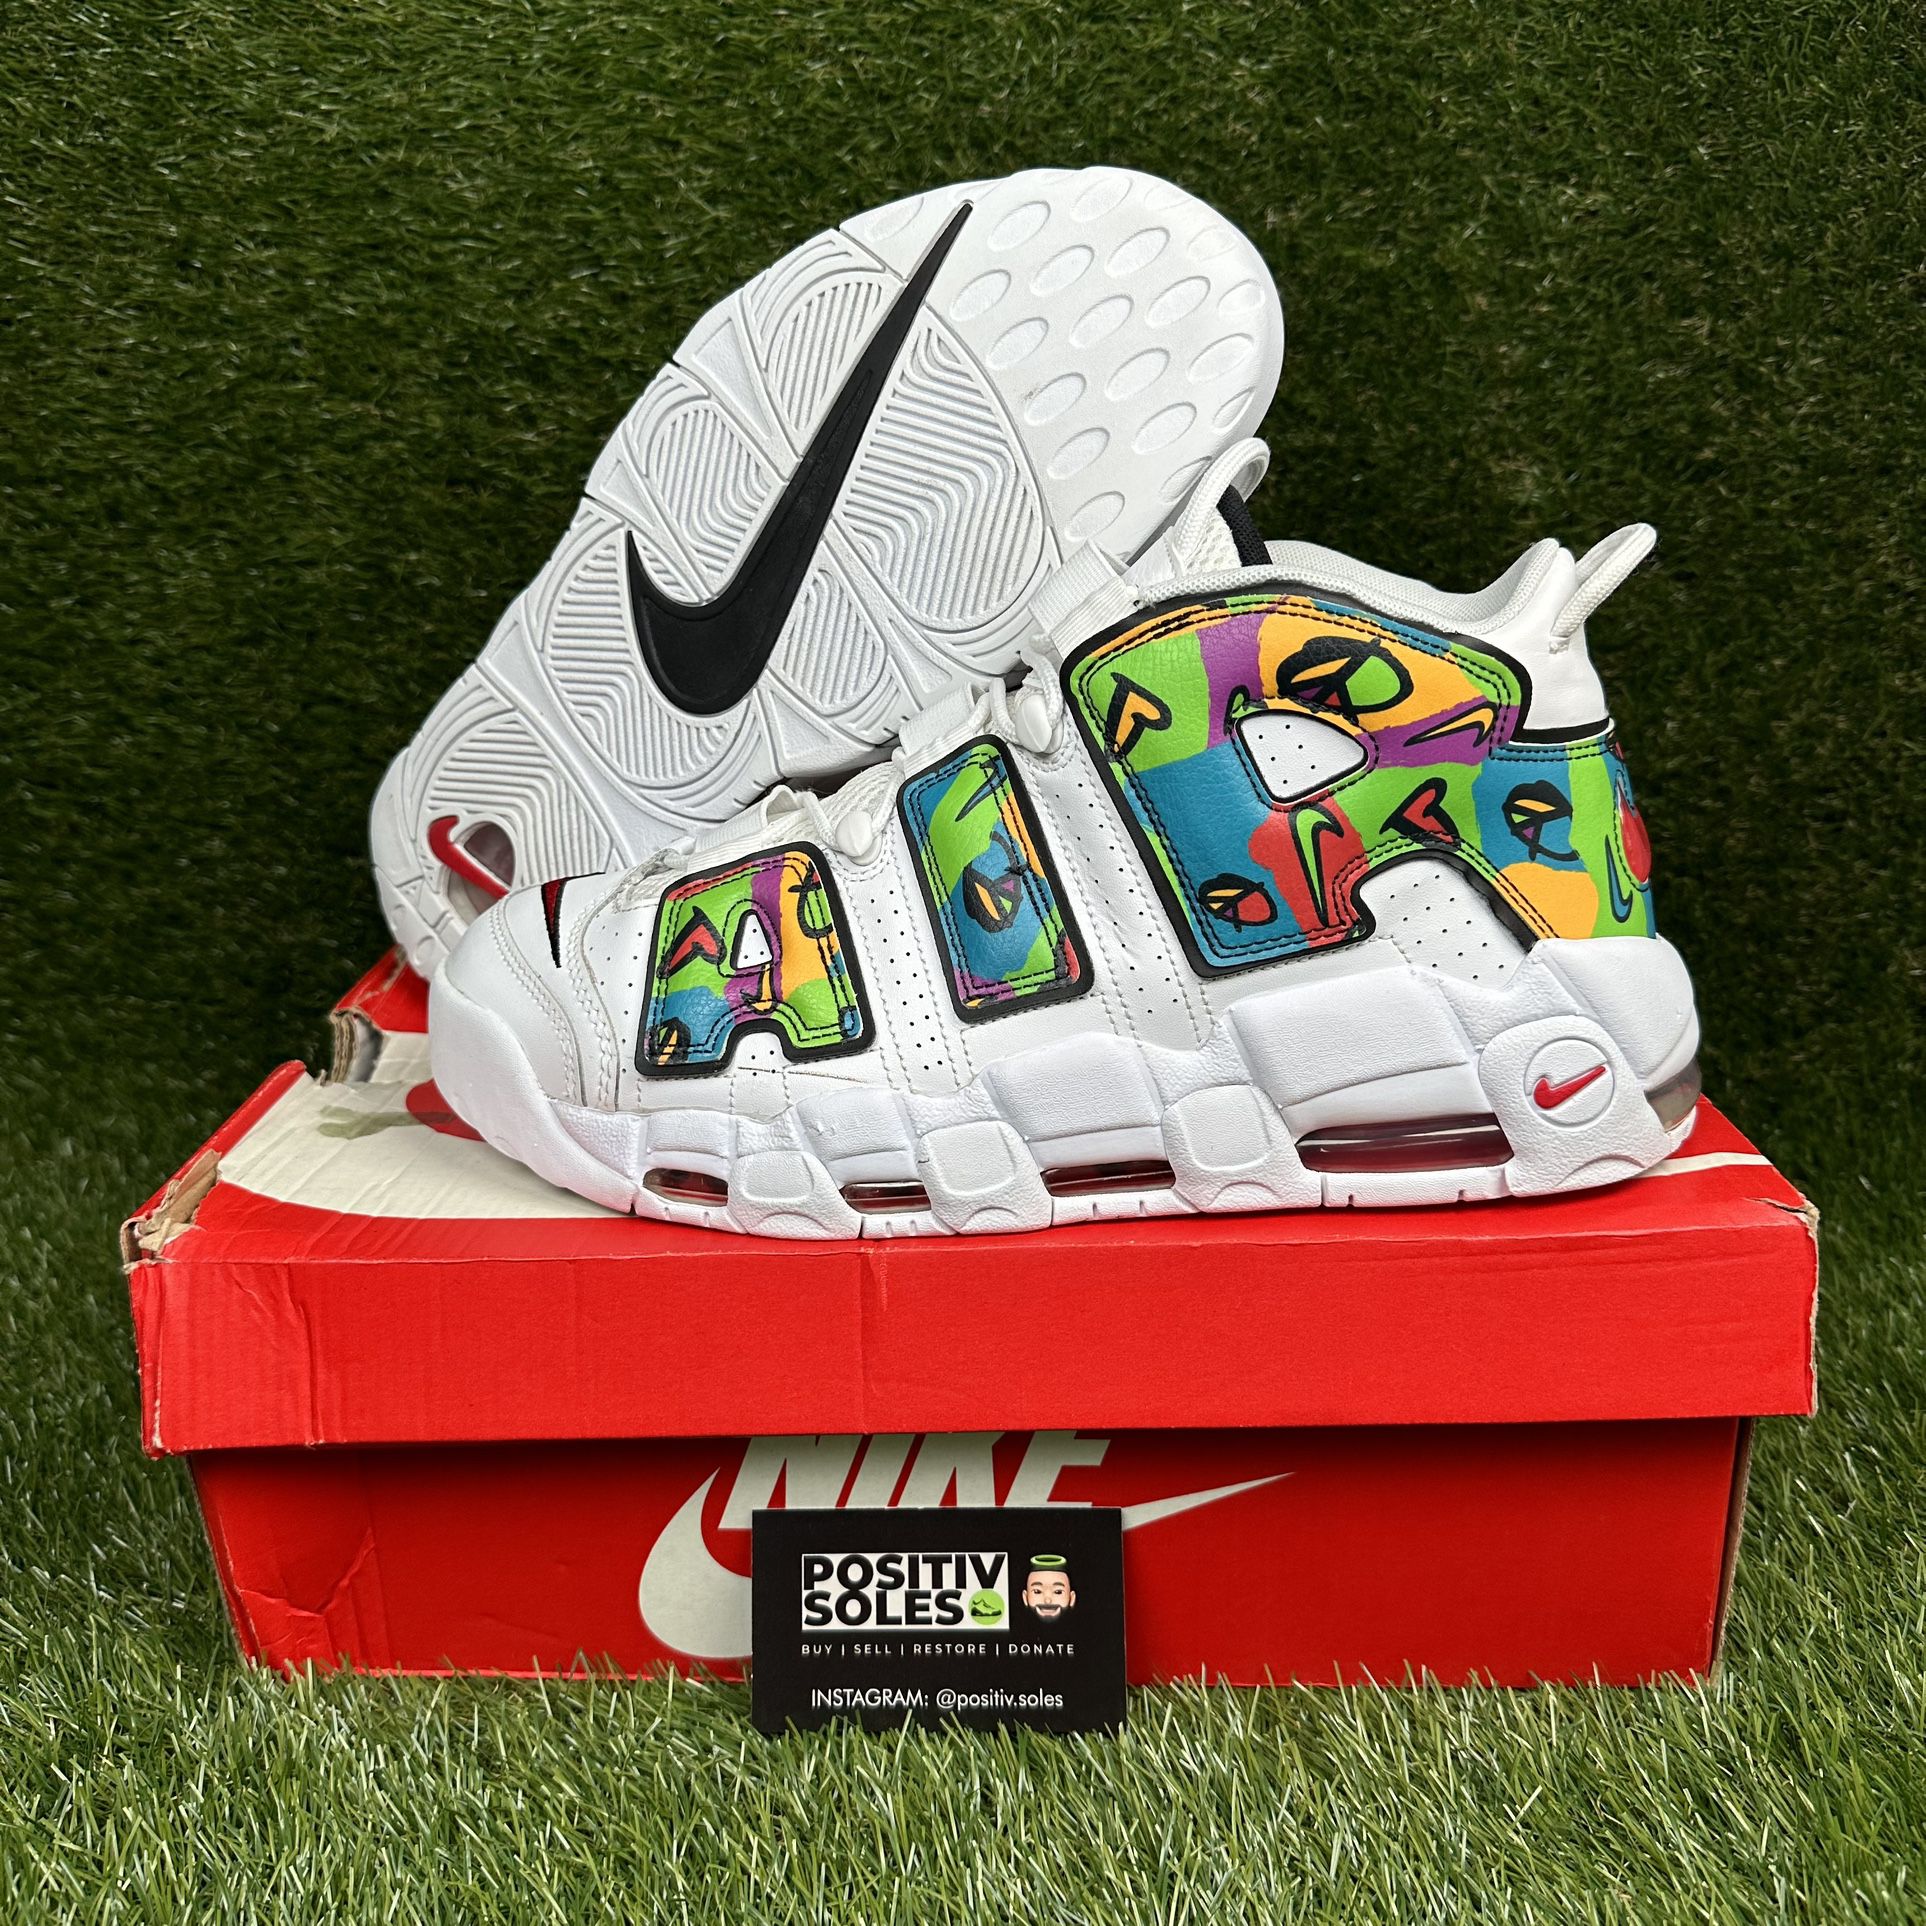 Custom Made Nike Air More Uptempo '96 White/Black Men Sneakers